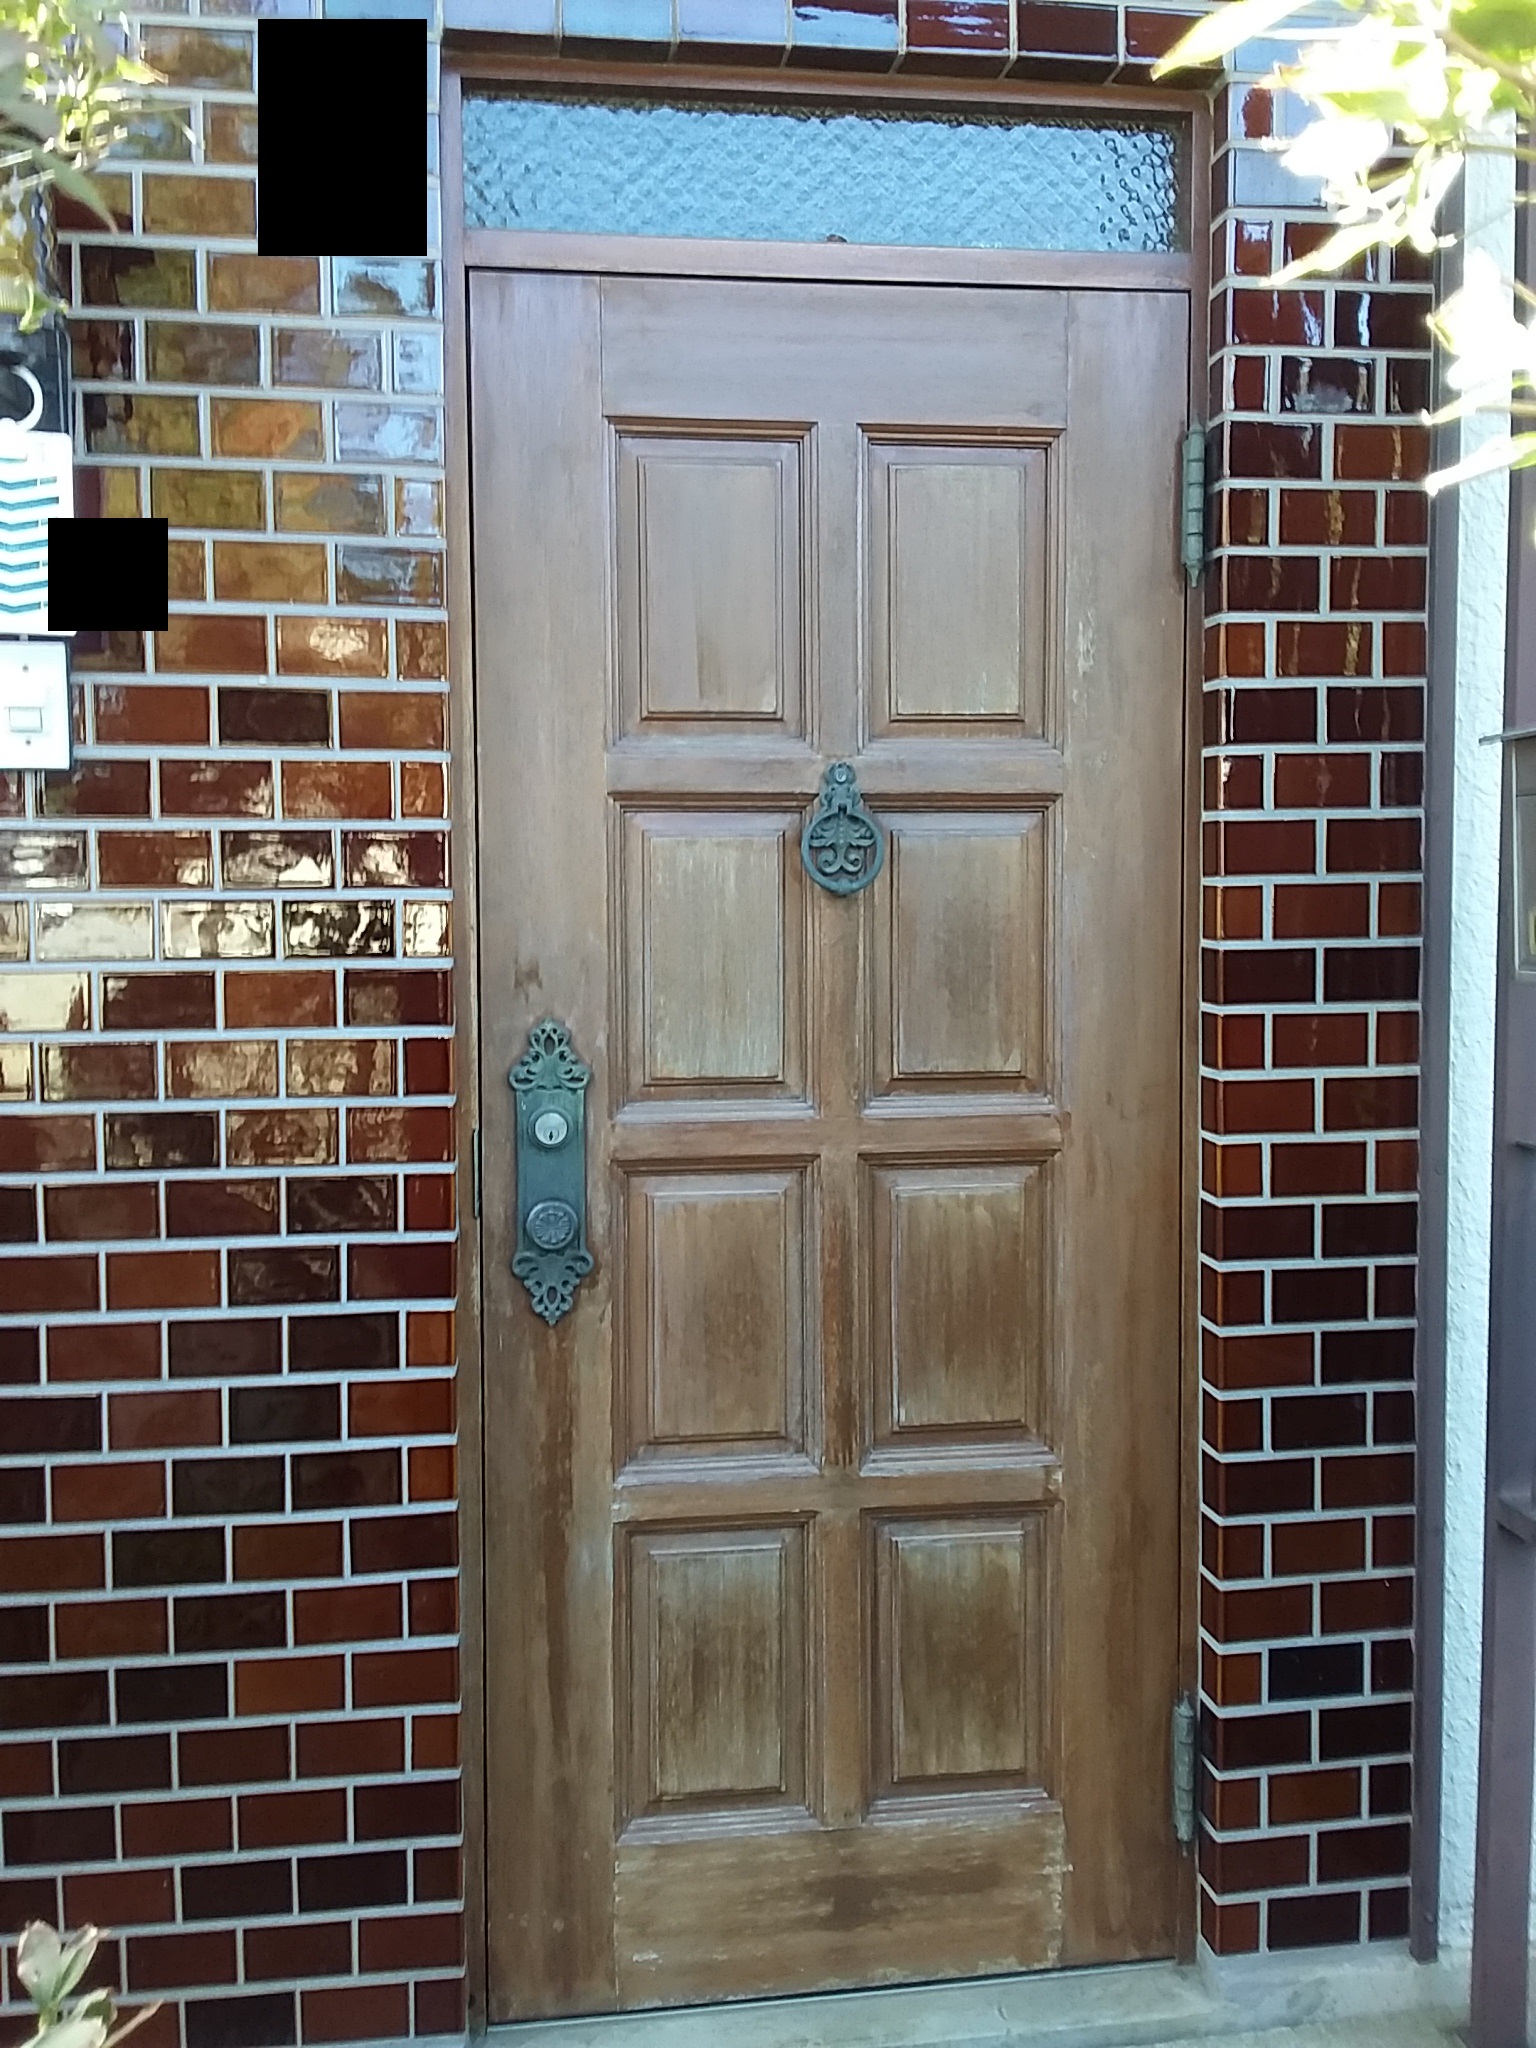 木製玄関ドアの塗装の悩みを解消する方法【LIXILリシェントM78型】千葉県柏市の工事事例玄関ドアのリフォームなら玄関ドアマイスターへお任せください